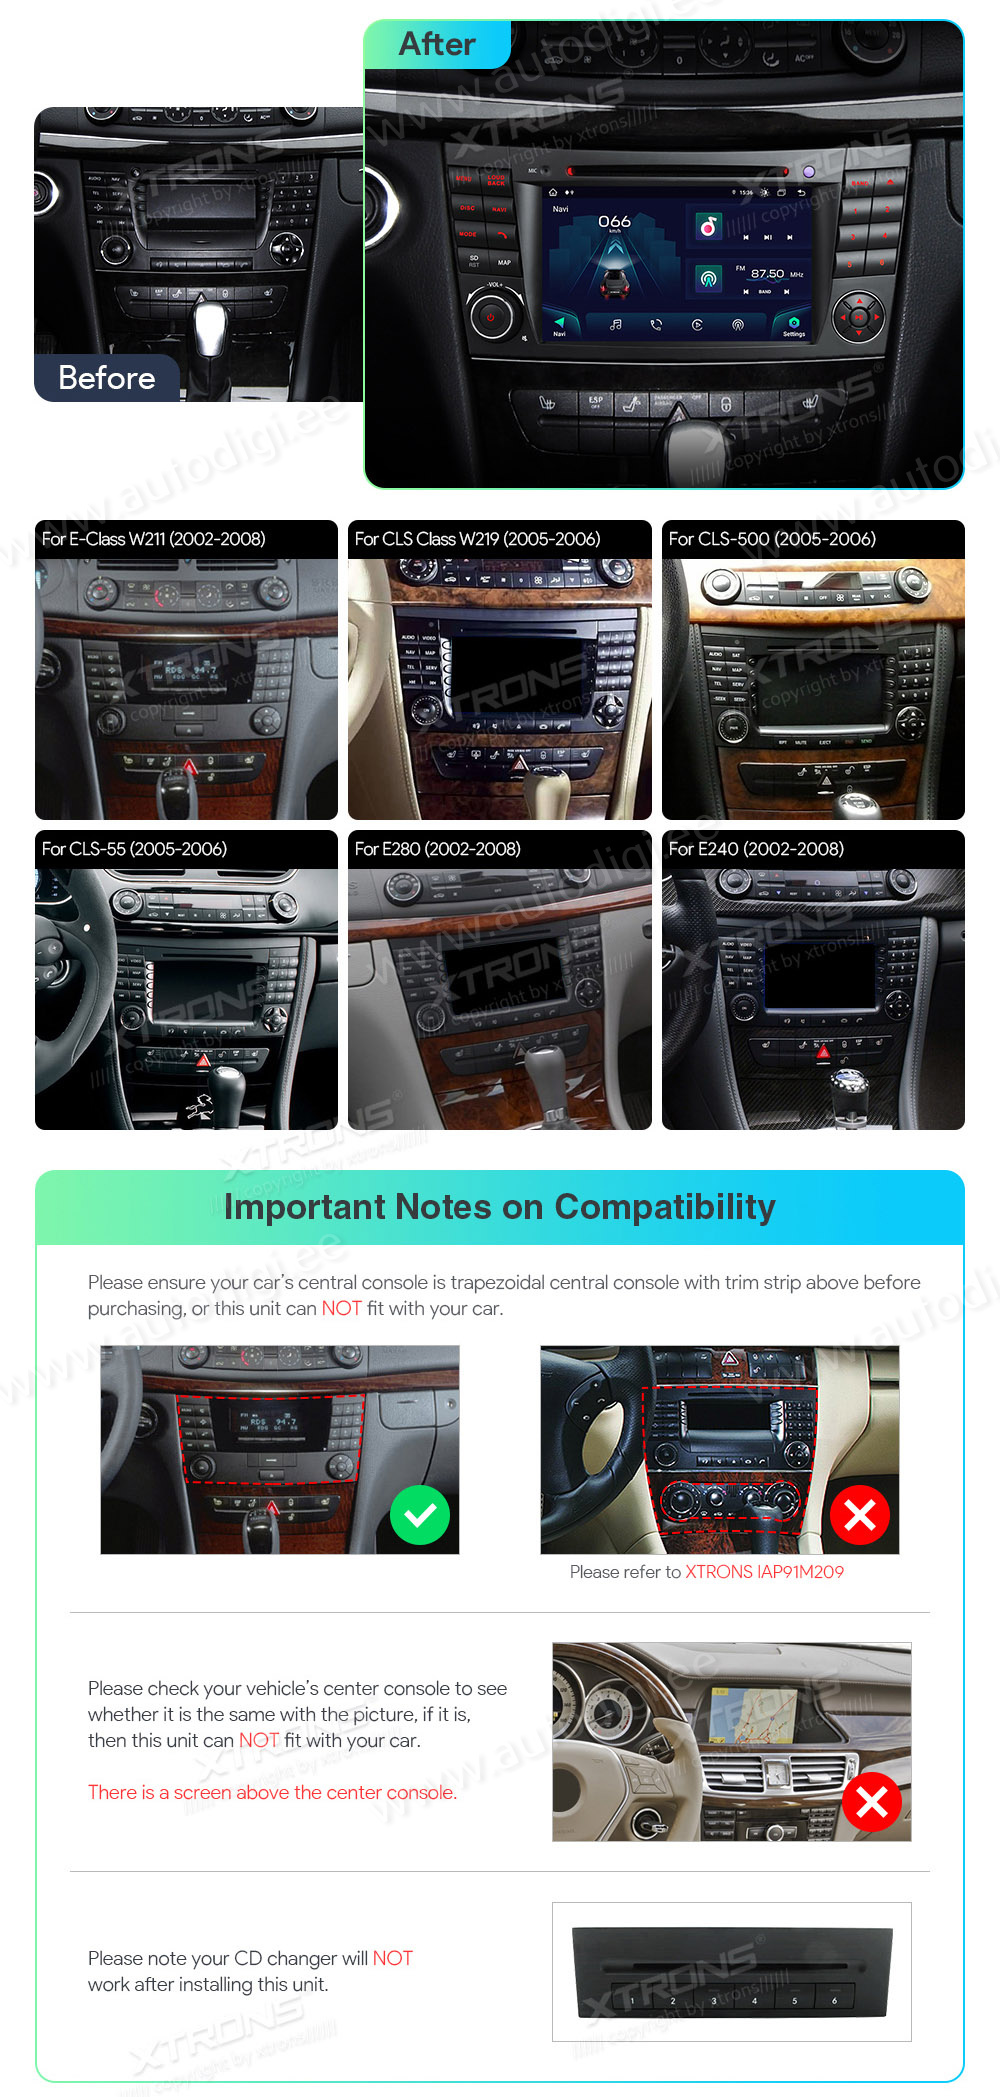 Mercedes-Benz E-Class W211 (2002-2008) | CLS W219 (2005-2006)  совместимость мультимедийного радио в зависимости от модели автомобиля